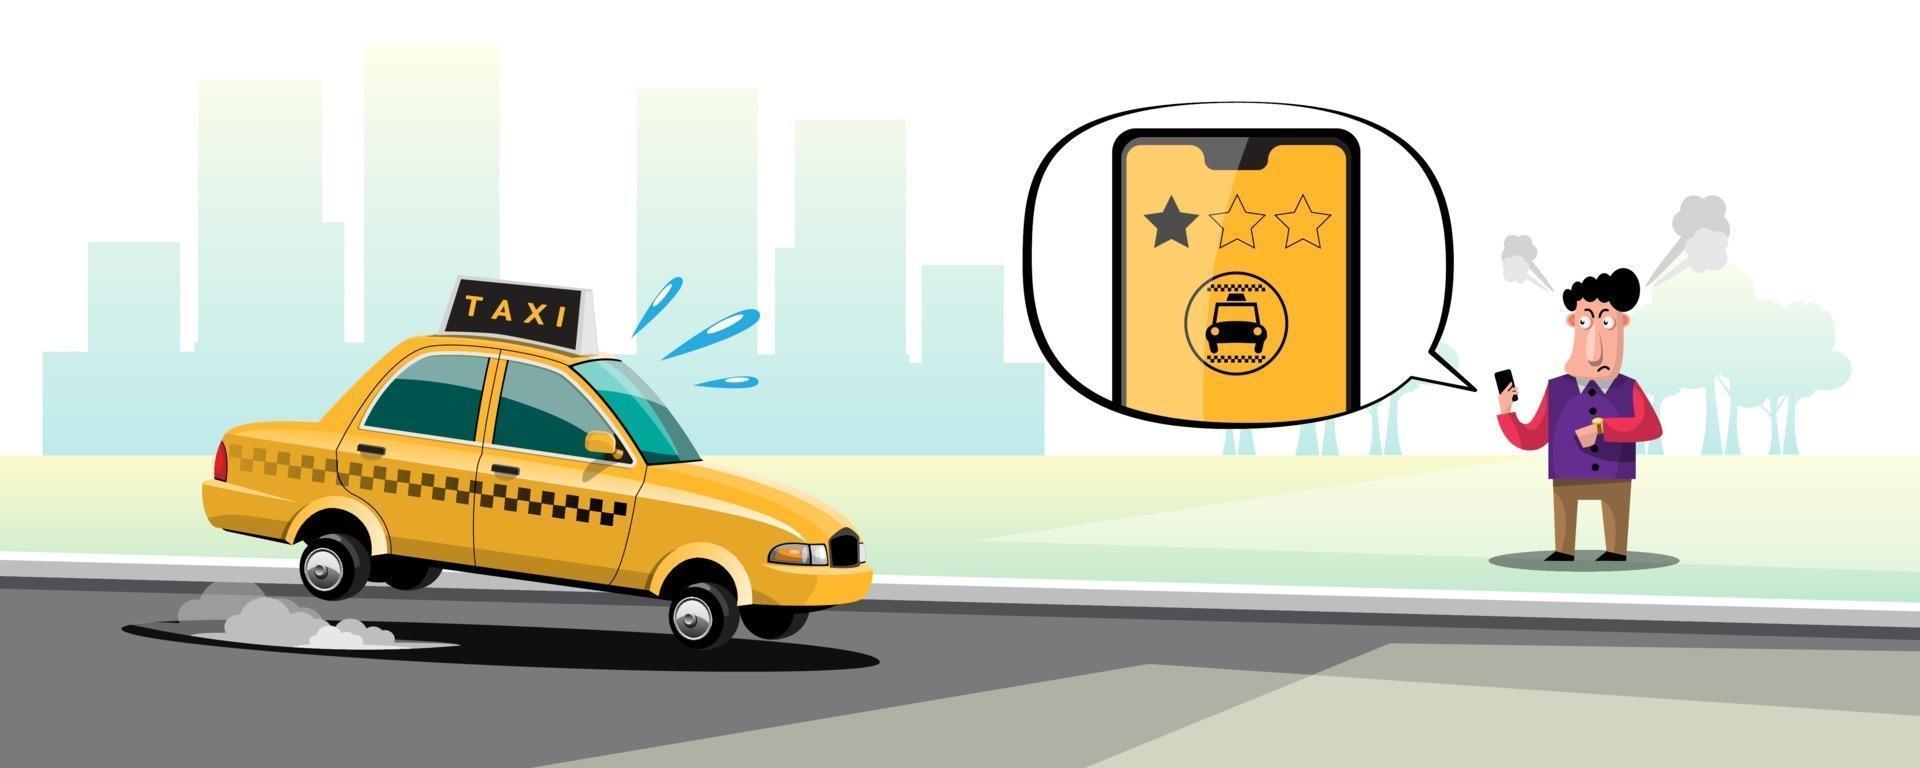 applicazione online per chiamare il servizio taxi tramite smartphone e impostare la posizione per la destinazione vettore